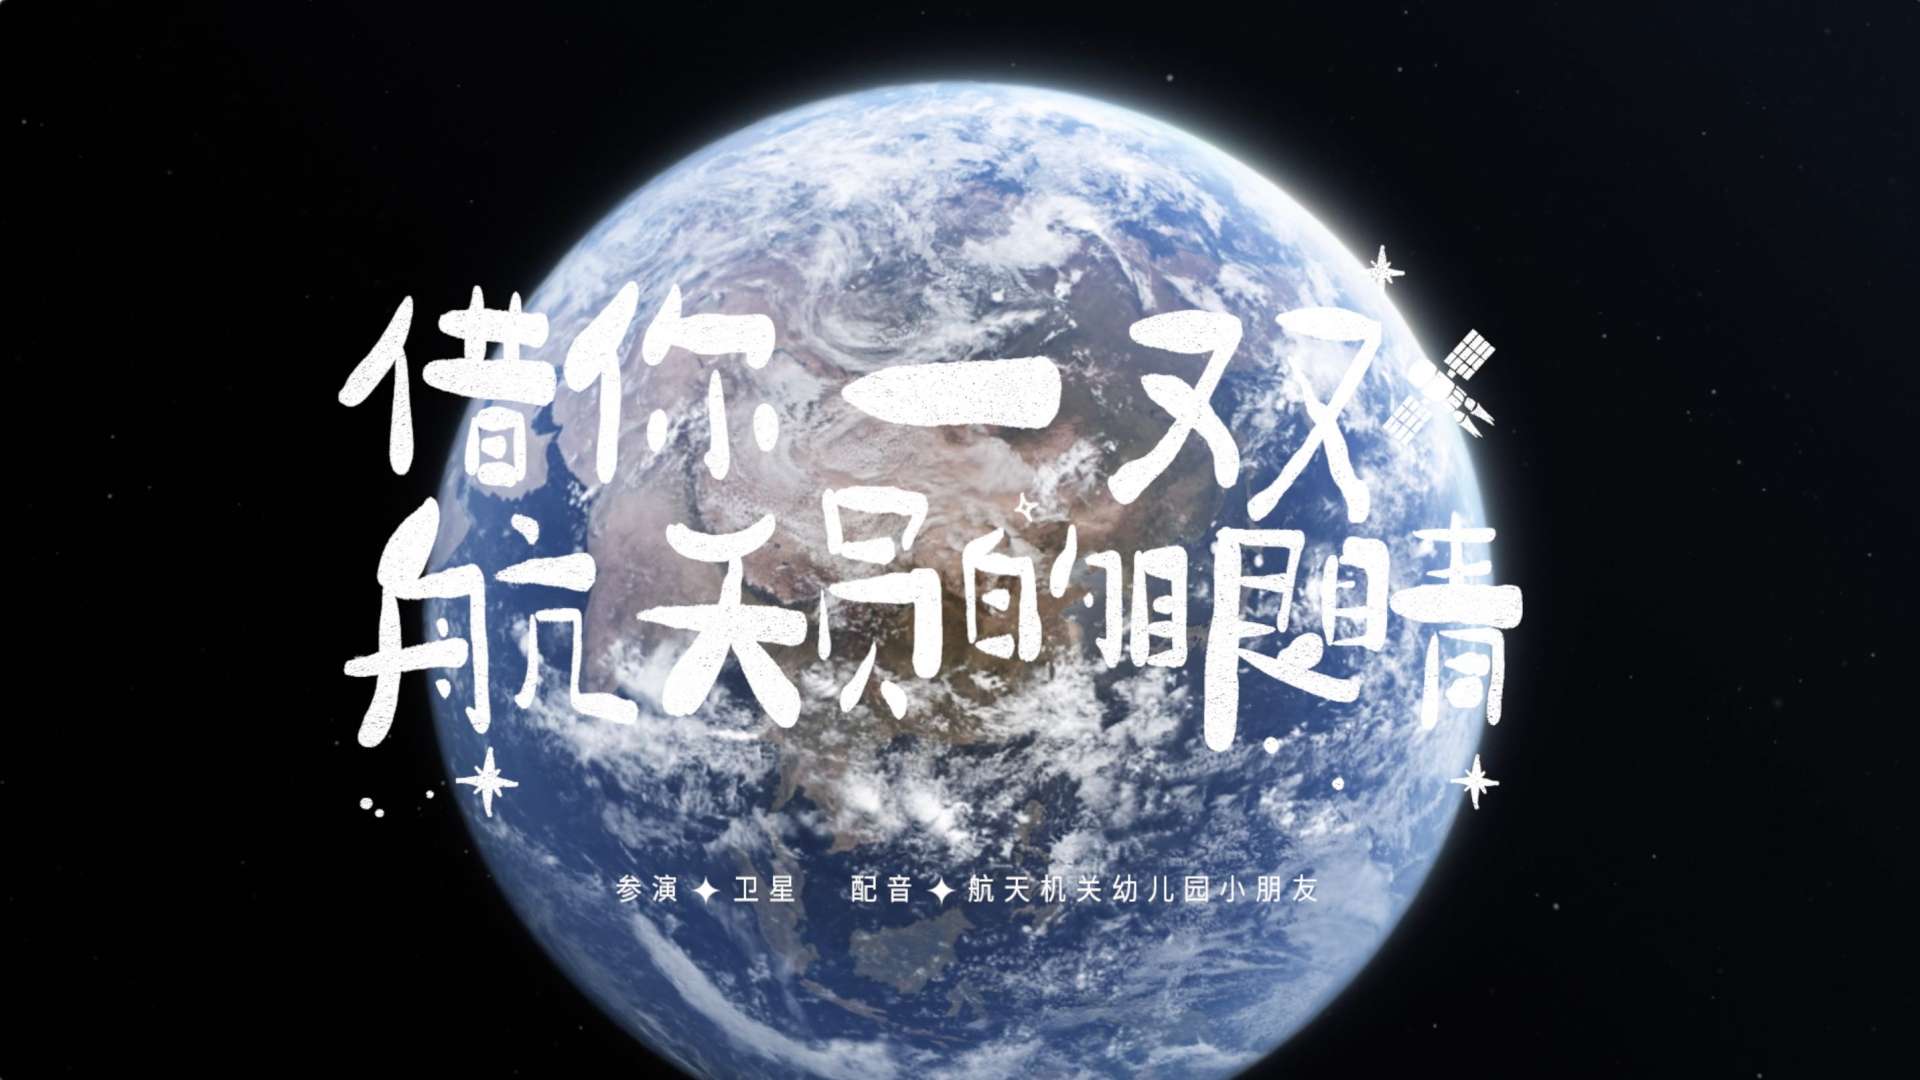 《借你一双航天员的眼睛》蒙牛携手中国航天20年纪念短片